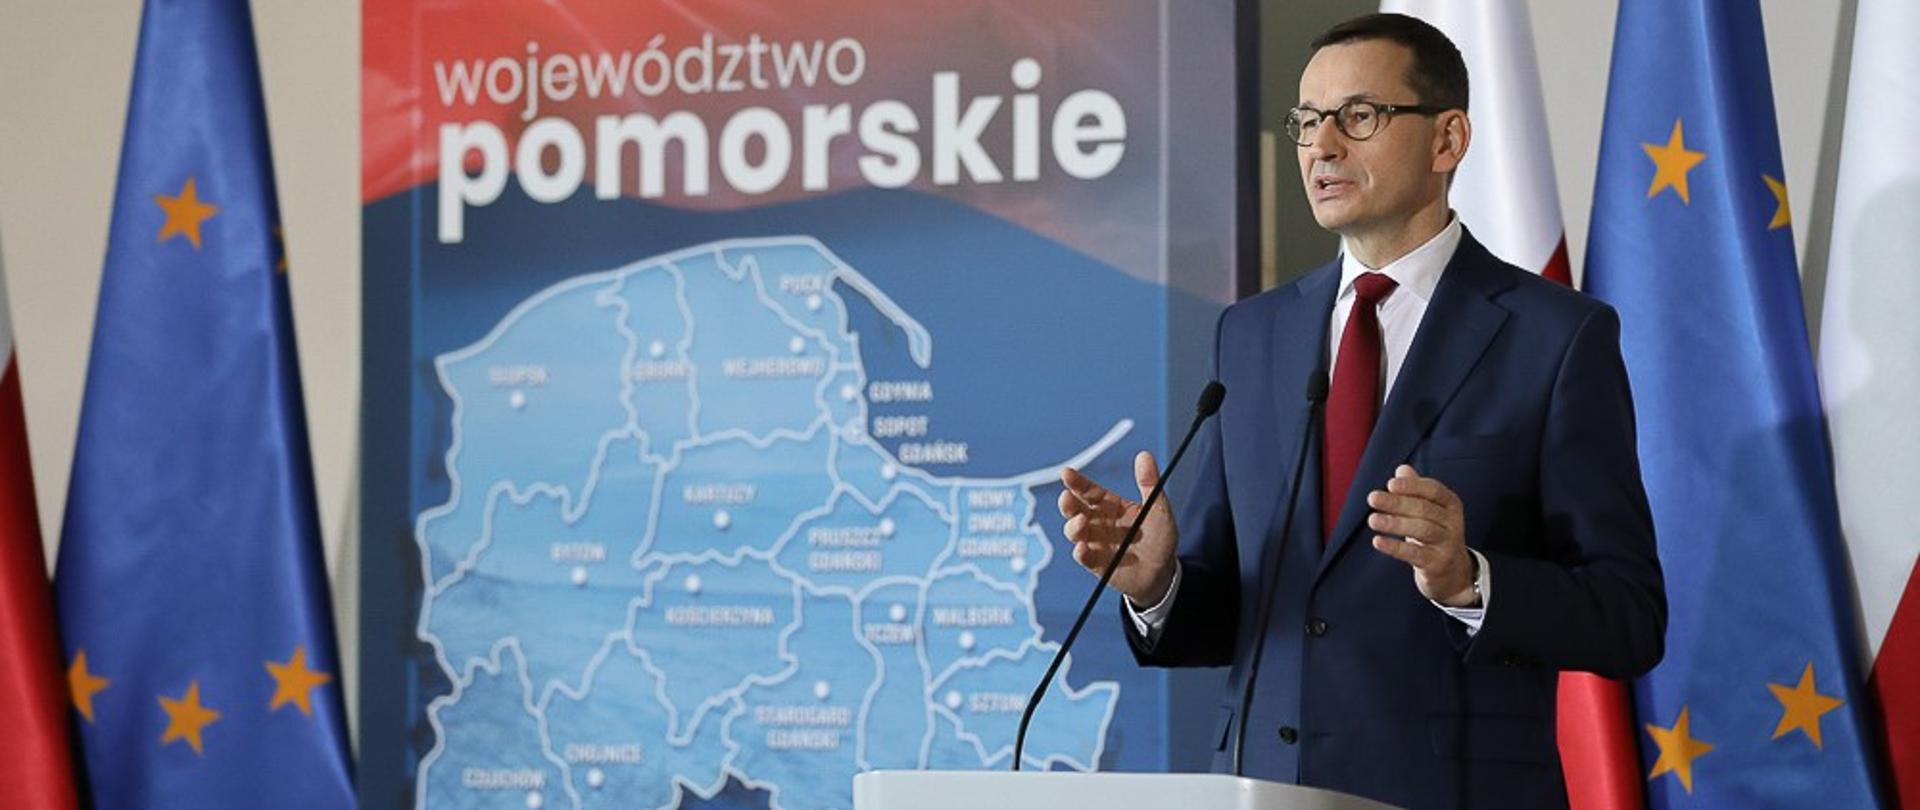 Premier Mateusz Morawiecki przemawia na tle mapy województwa pomorskiego.